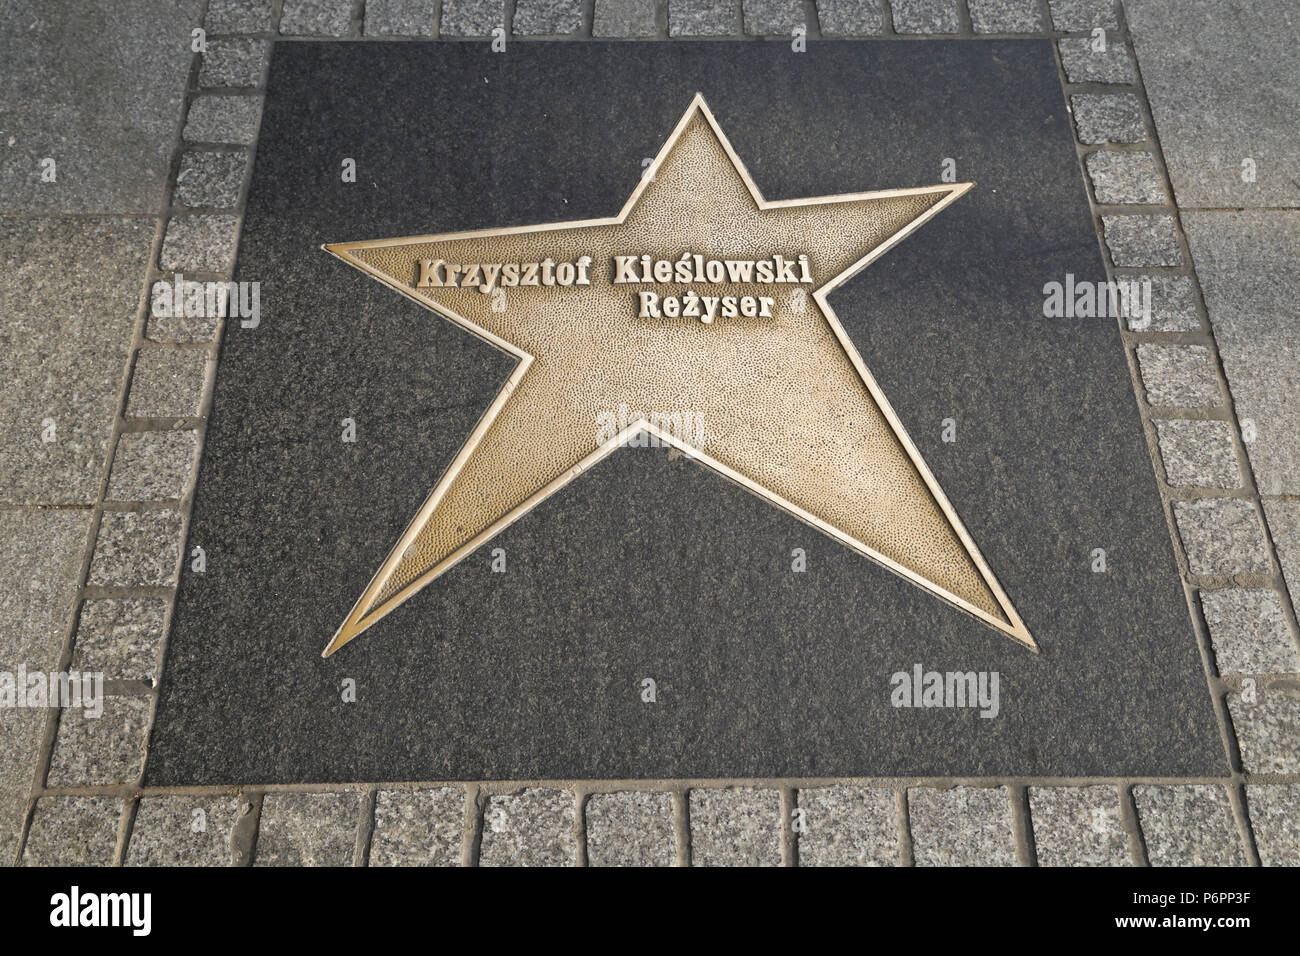 Star of filmdirector Krzysztof Kieslowski at the Lodz Stars Avenue at Piotrkowska street in Lodz, Poland Stock Photo